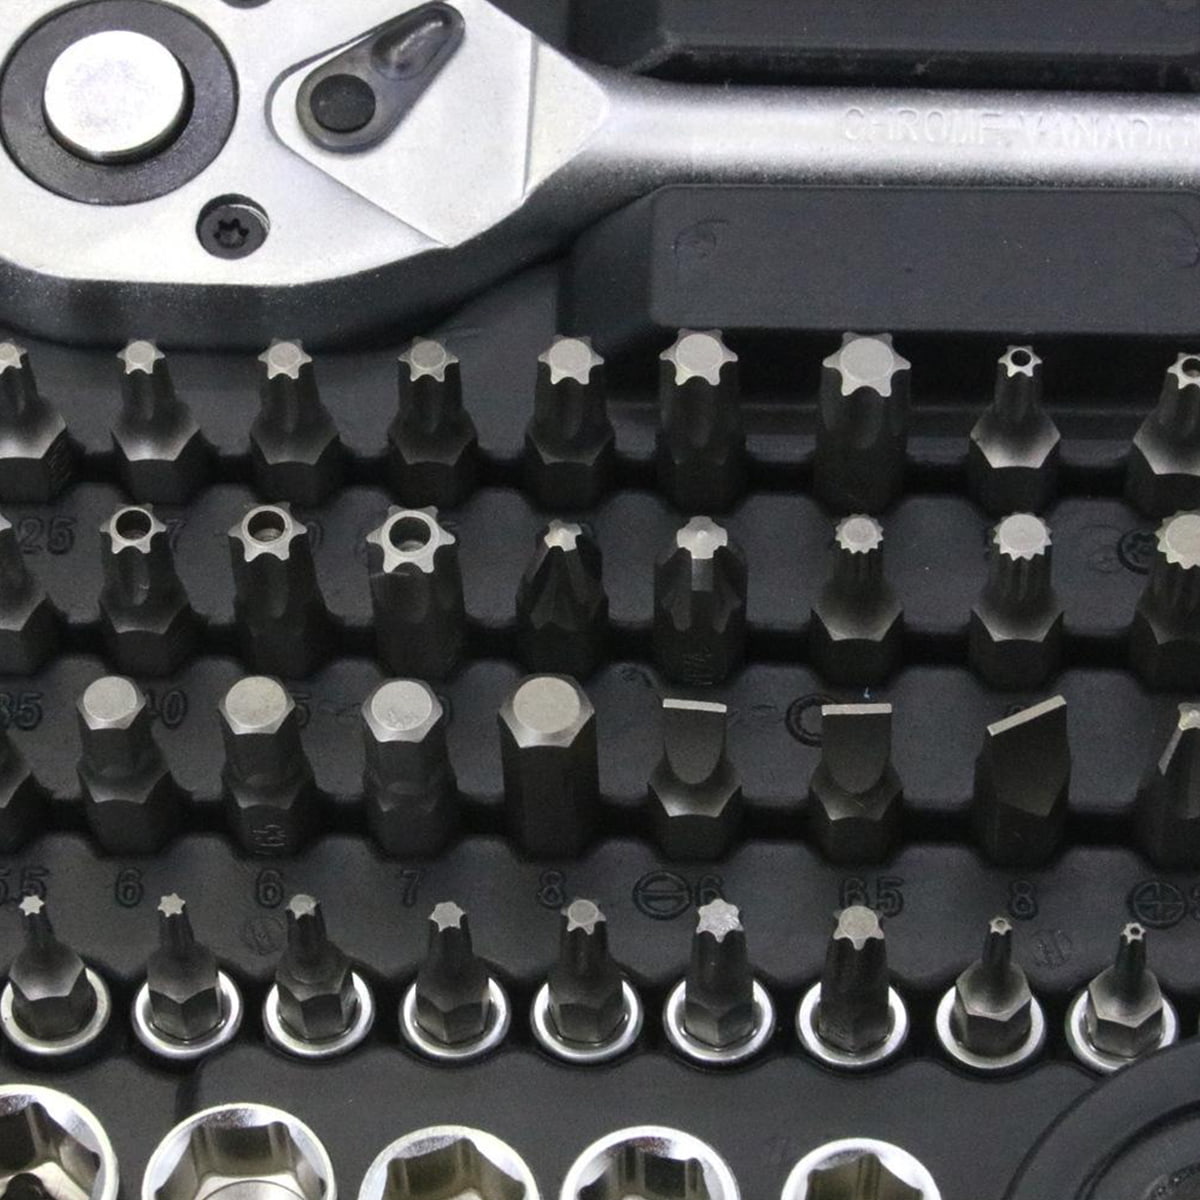 216 peças 1/4' & 1/2' & 3/8' conjuntos de chaves de soquete para reparo mecânico profissional ferramentas manuais para reparo de automóveis